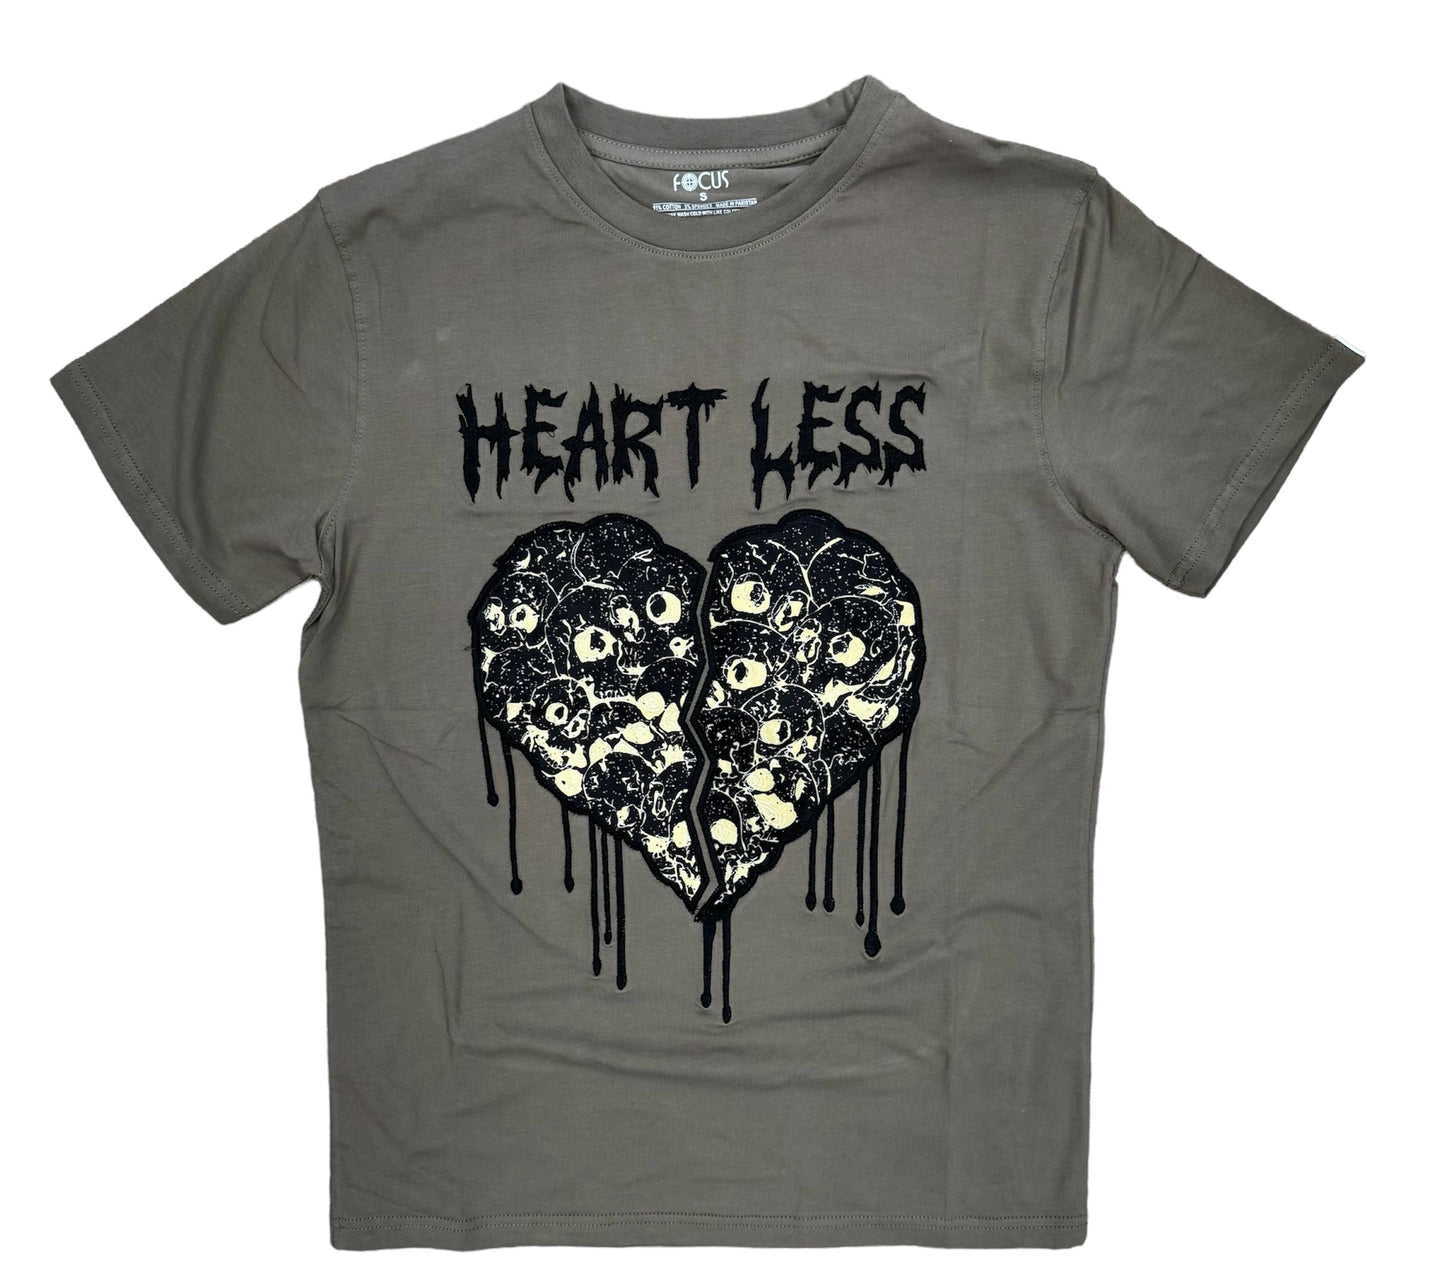 Focus Heartless Applique Harvest T-Shirt